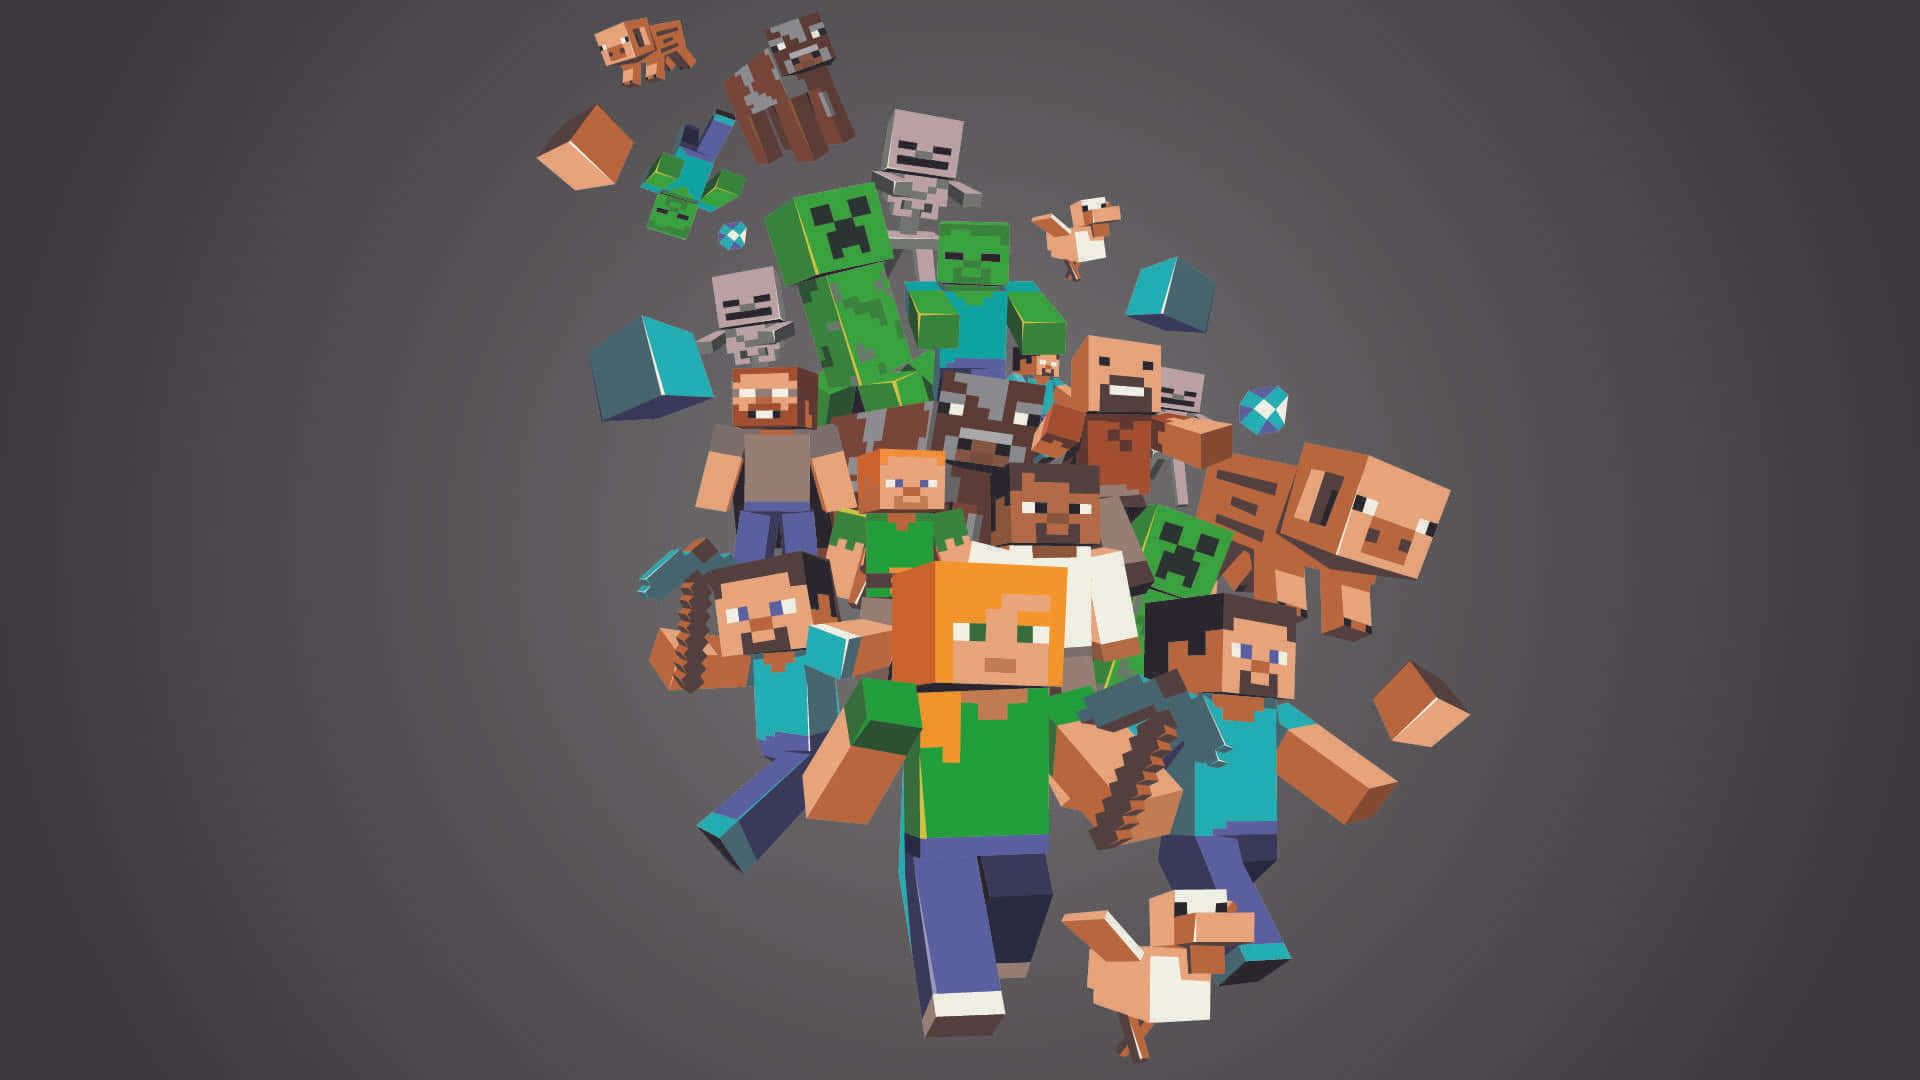 5 Best Minecraft Skins in 2023